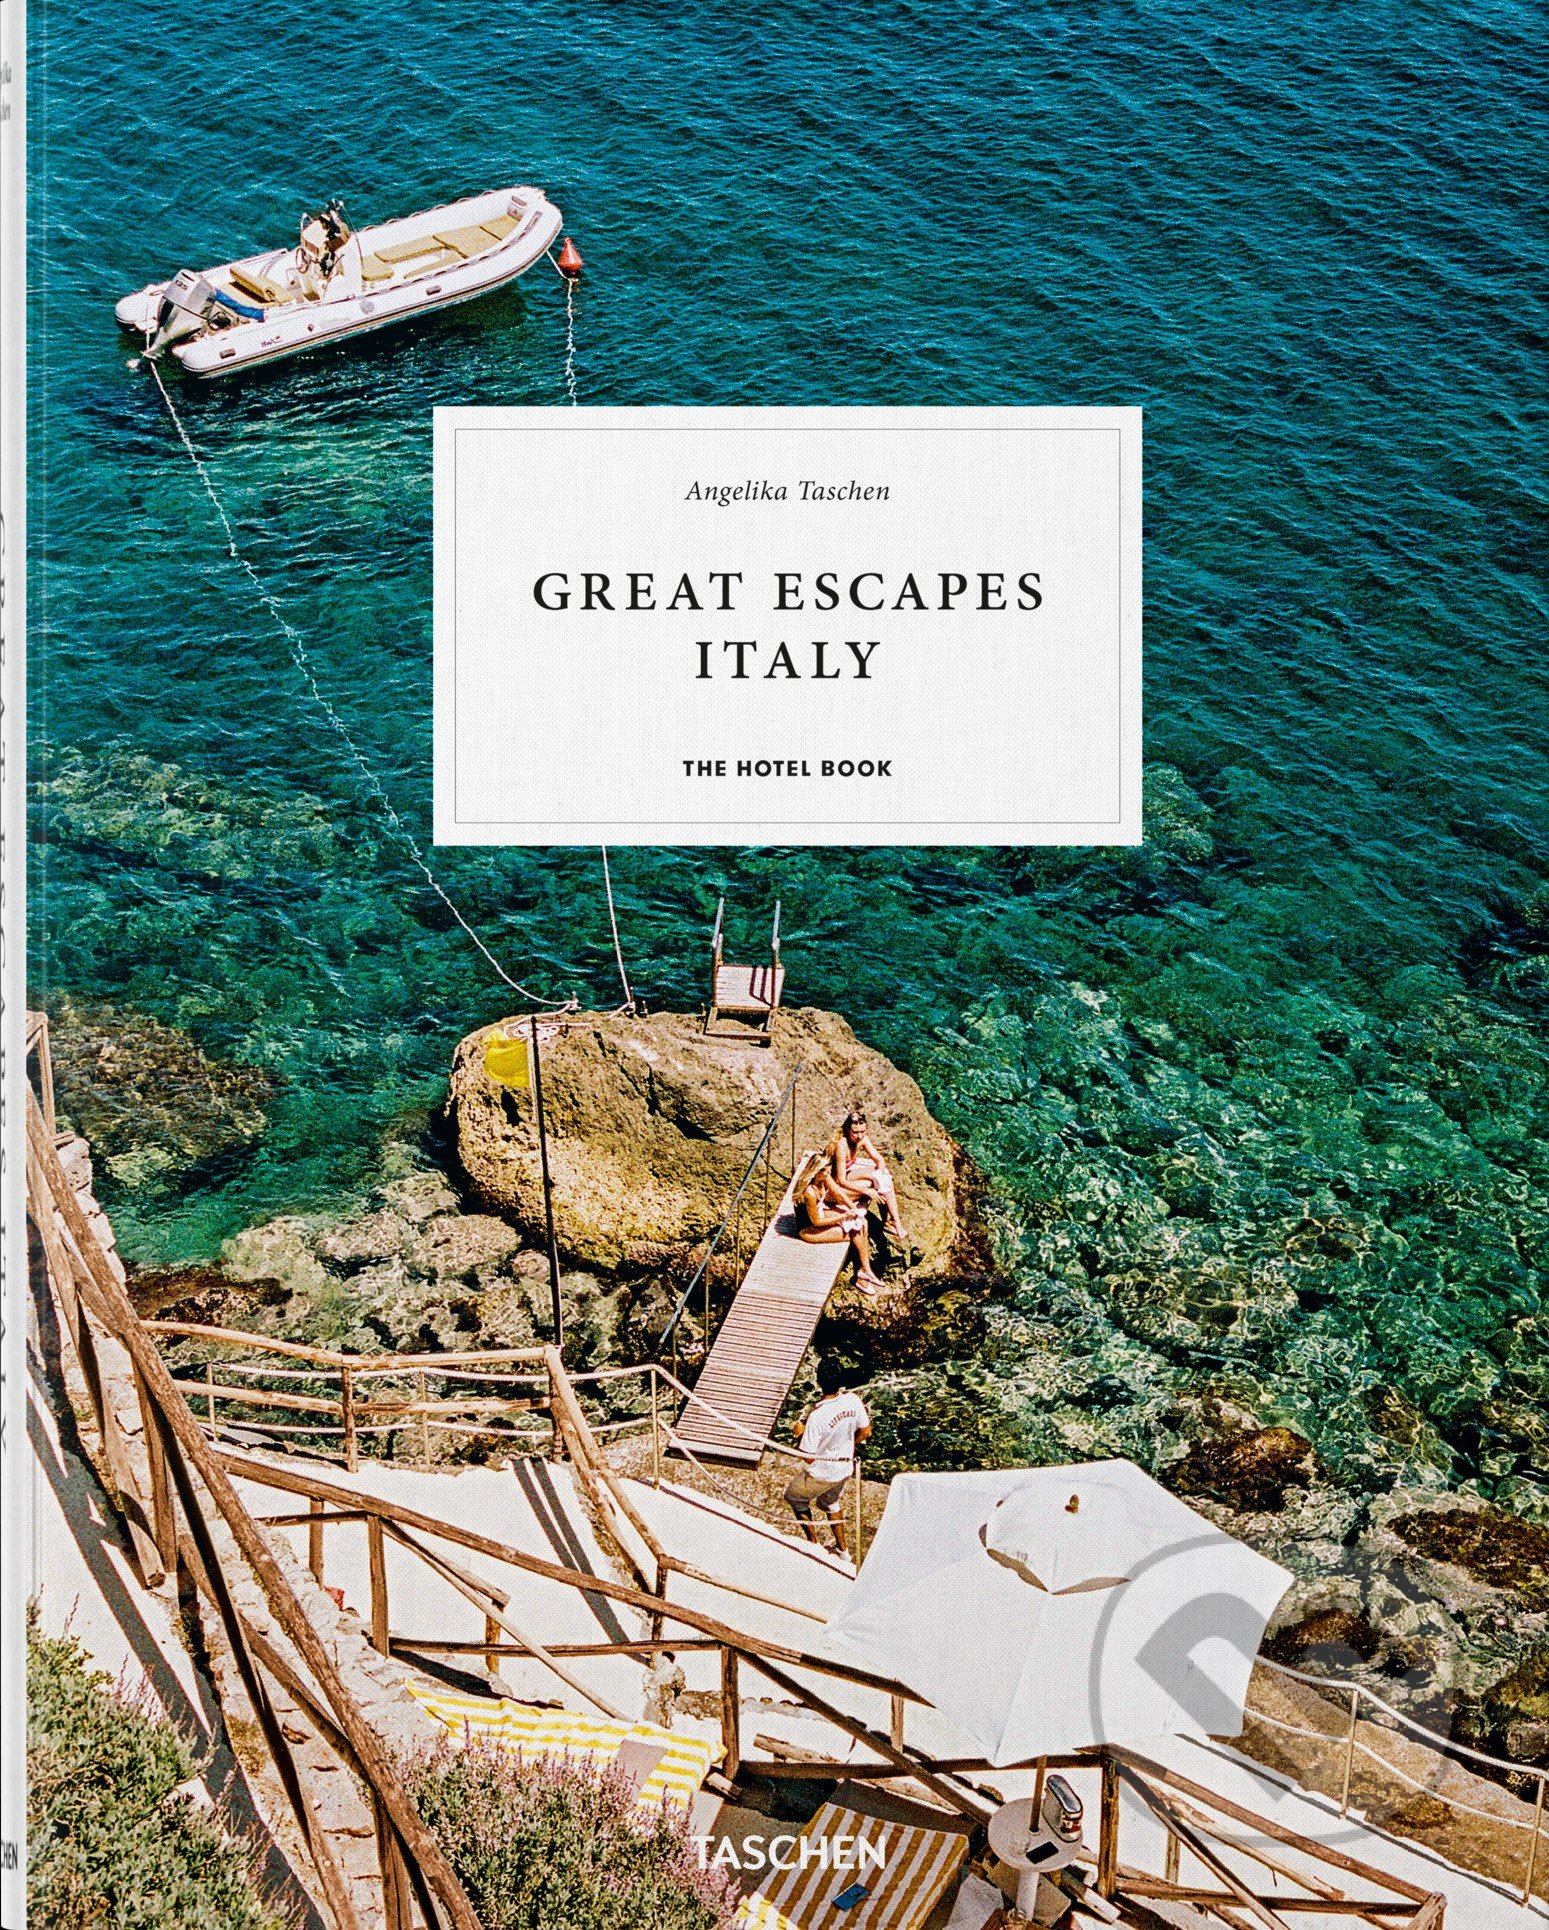 Great Escape: Italy - Angelika Taschen, Taschen, 2019